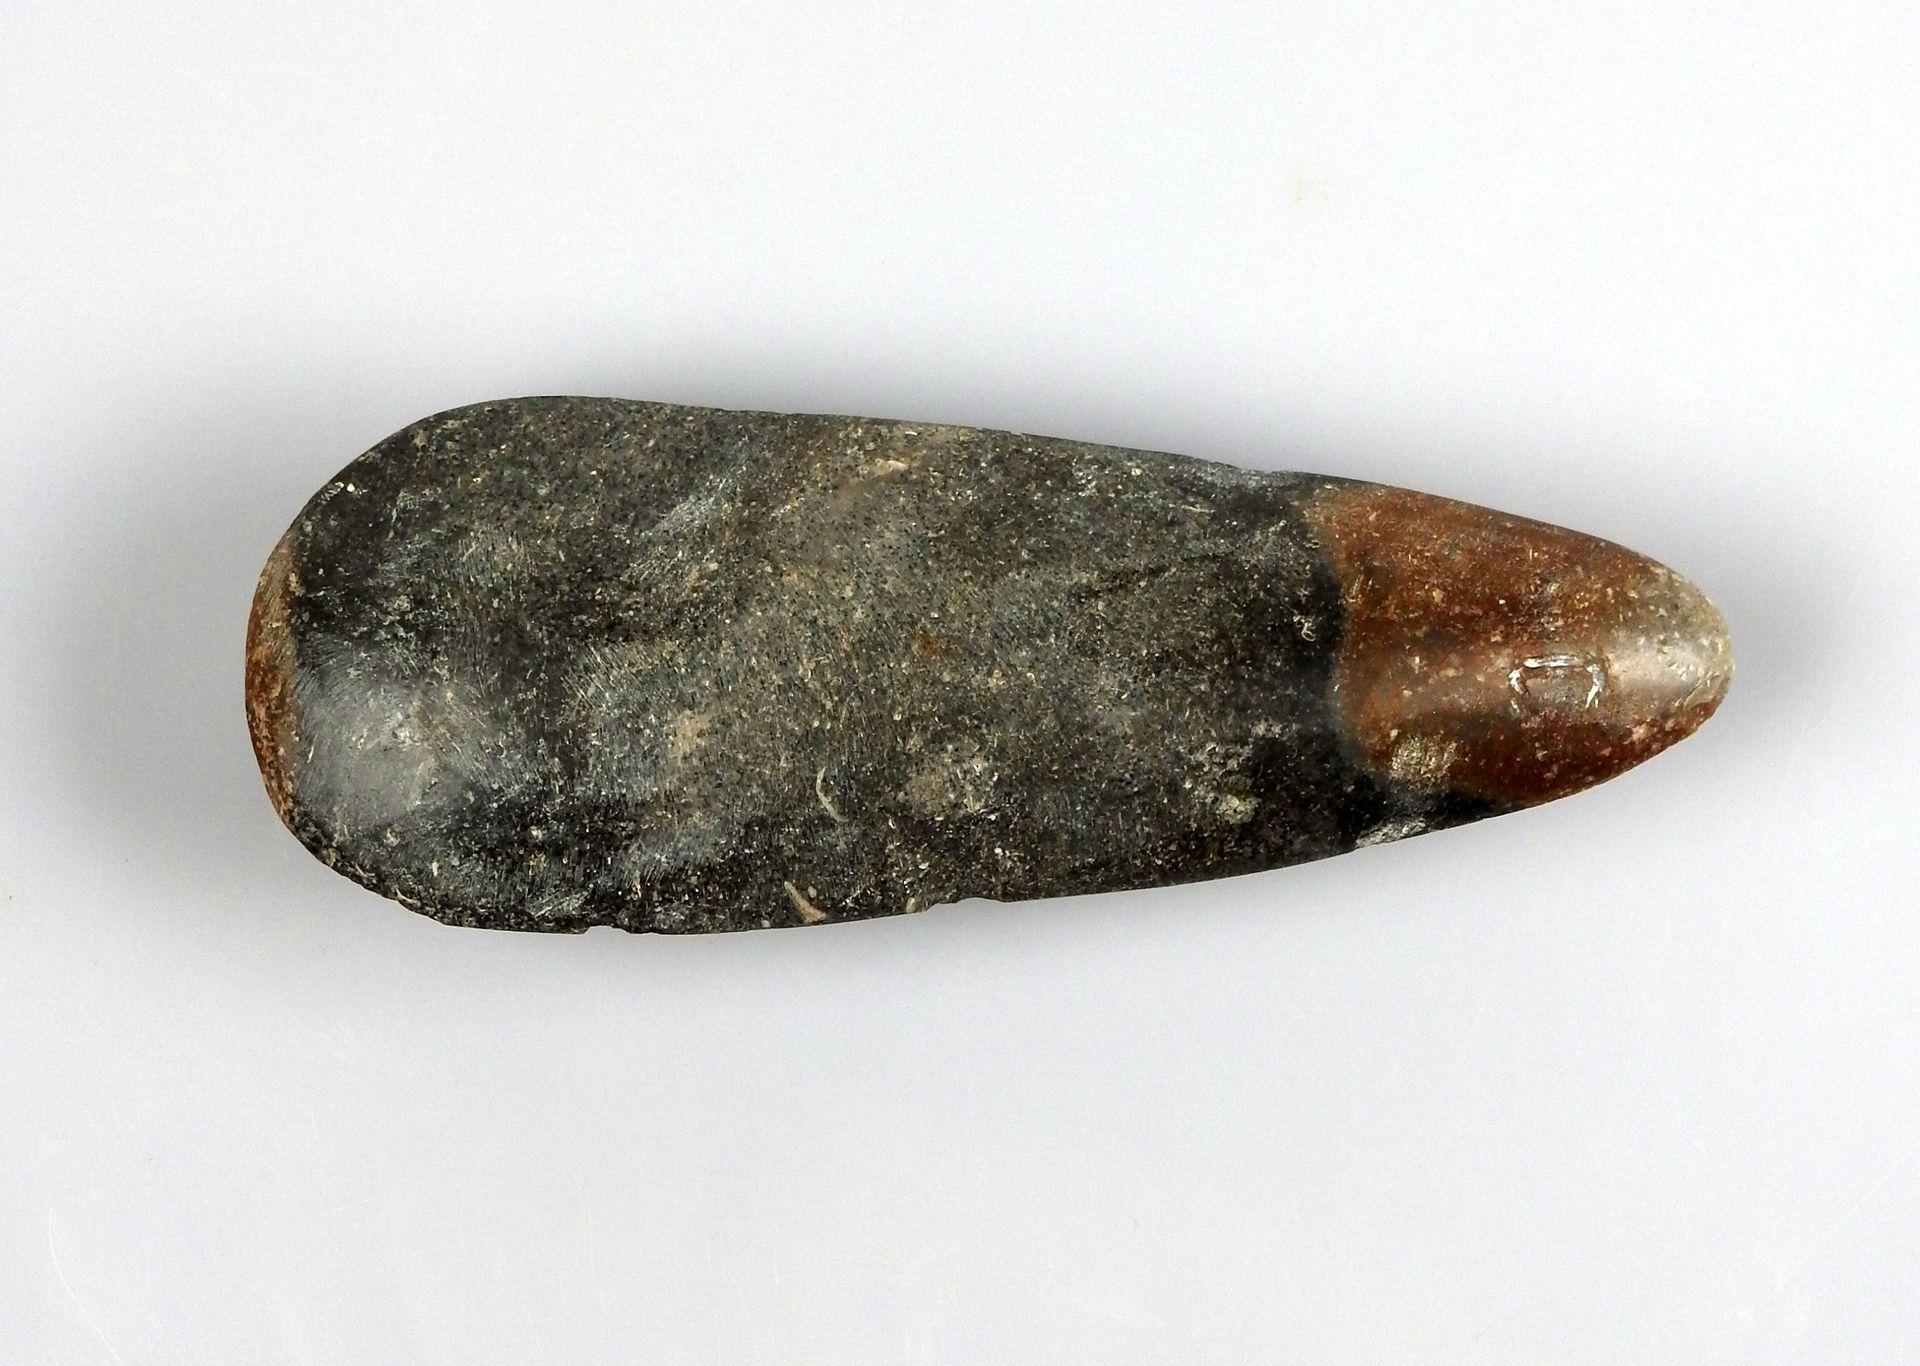 Null 形状有趣的双色抛光斧头

黑色和棕色石头12.5厘米

可能是波利尼西亚